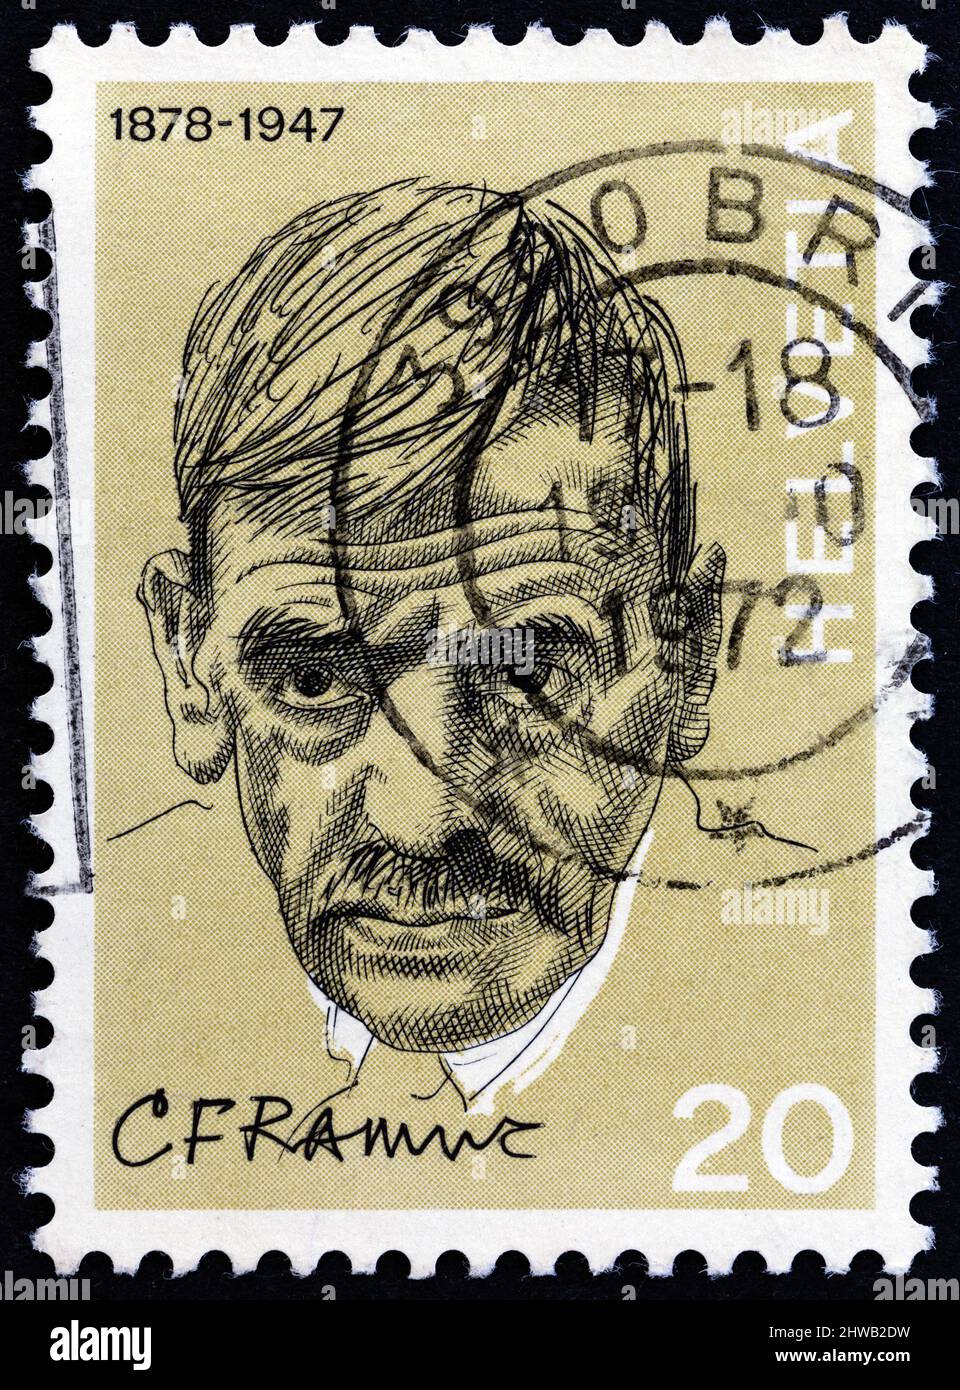 SVIZZERA - CIRCA 1972: Un francobollo stampato in Svizzera mostra il romanziere Charles Ramuz, circa 1972. Foto Stock